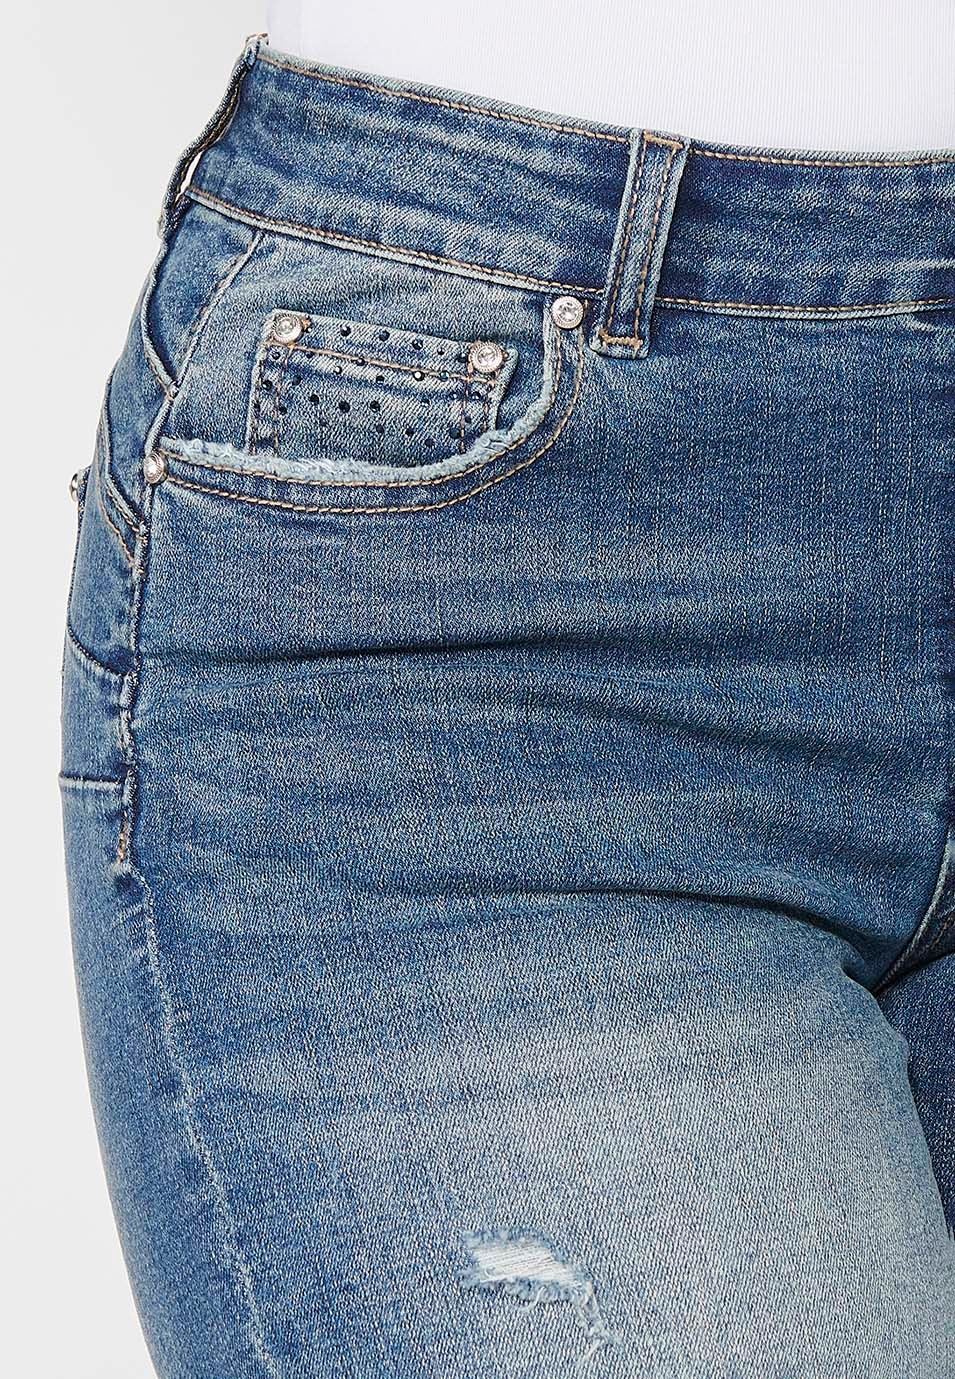 Pantalons curts Short acabat en volta amb Detalls de trencats i Tancament davanter amb cremallera i botó de Color Blau per a Dona 5